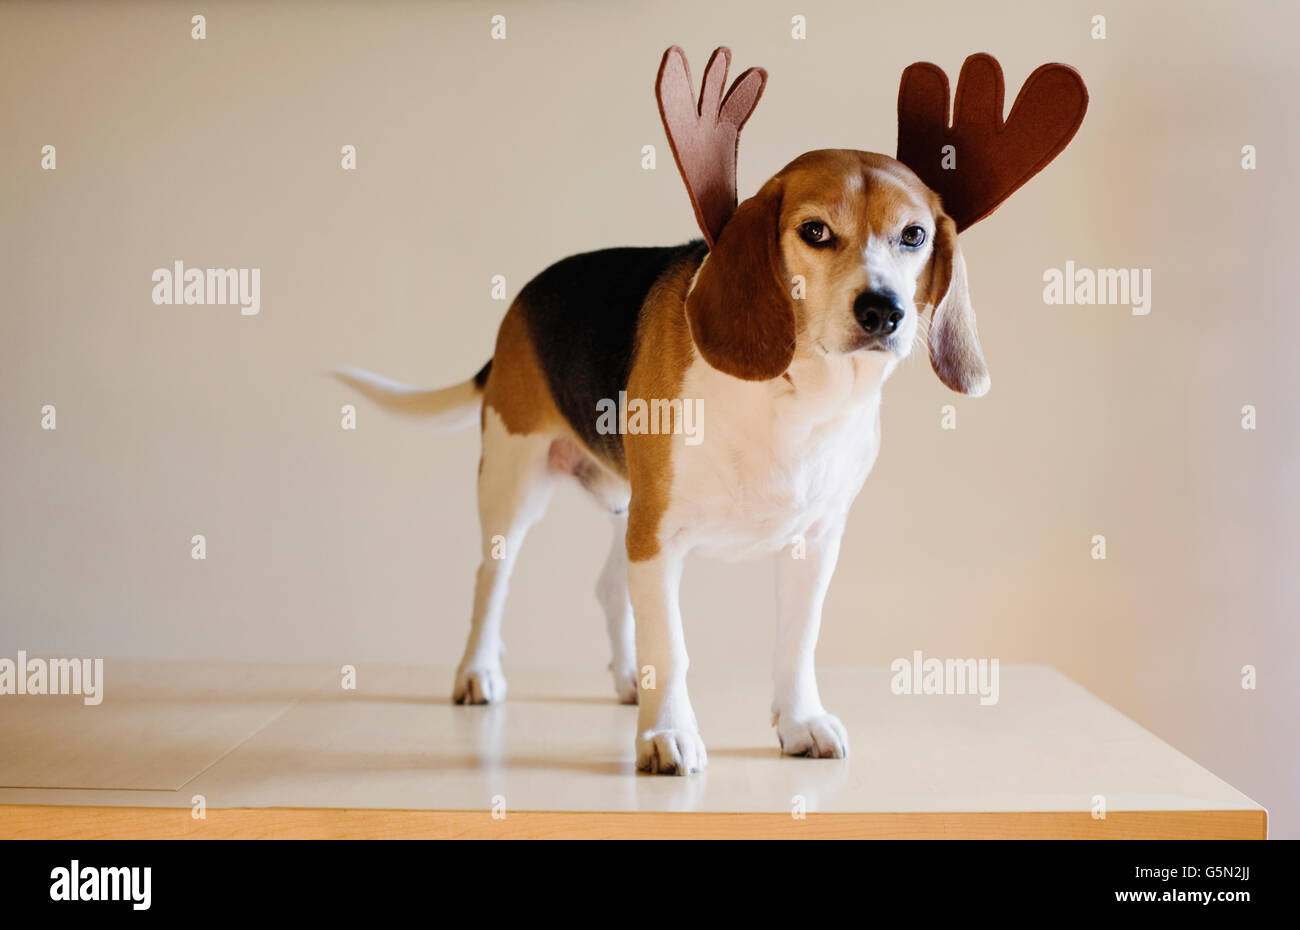 Dog wearing reindeer horns Banque D'Images